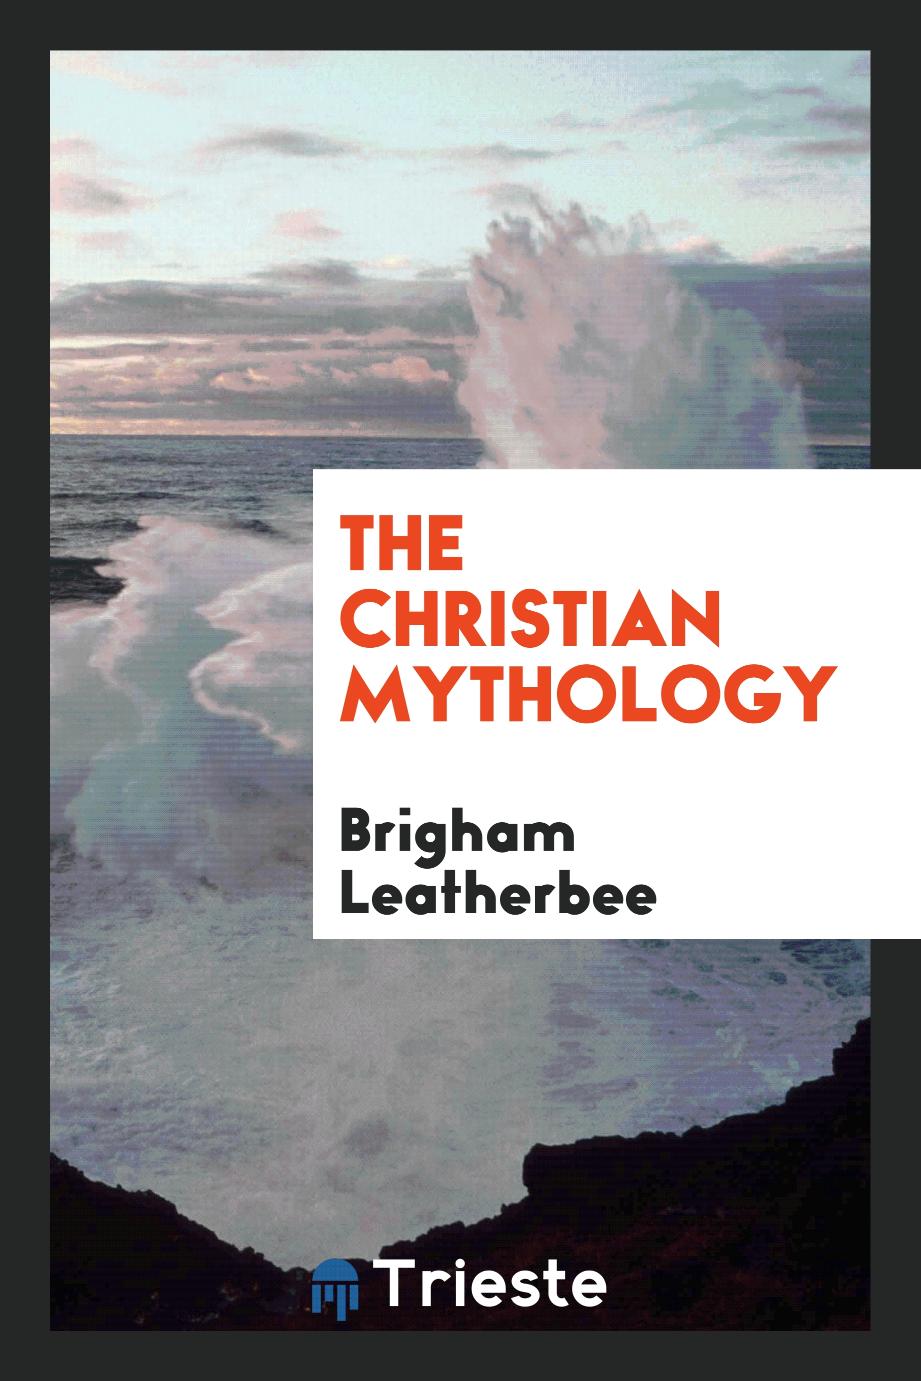 The Christian mythology